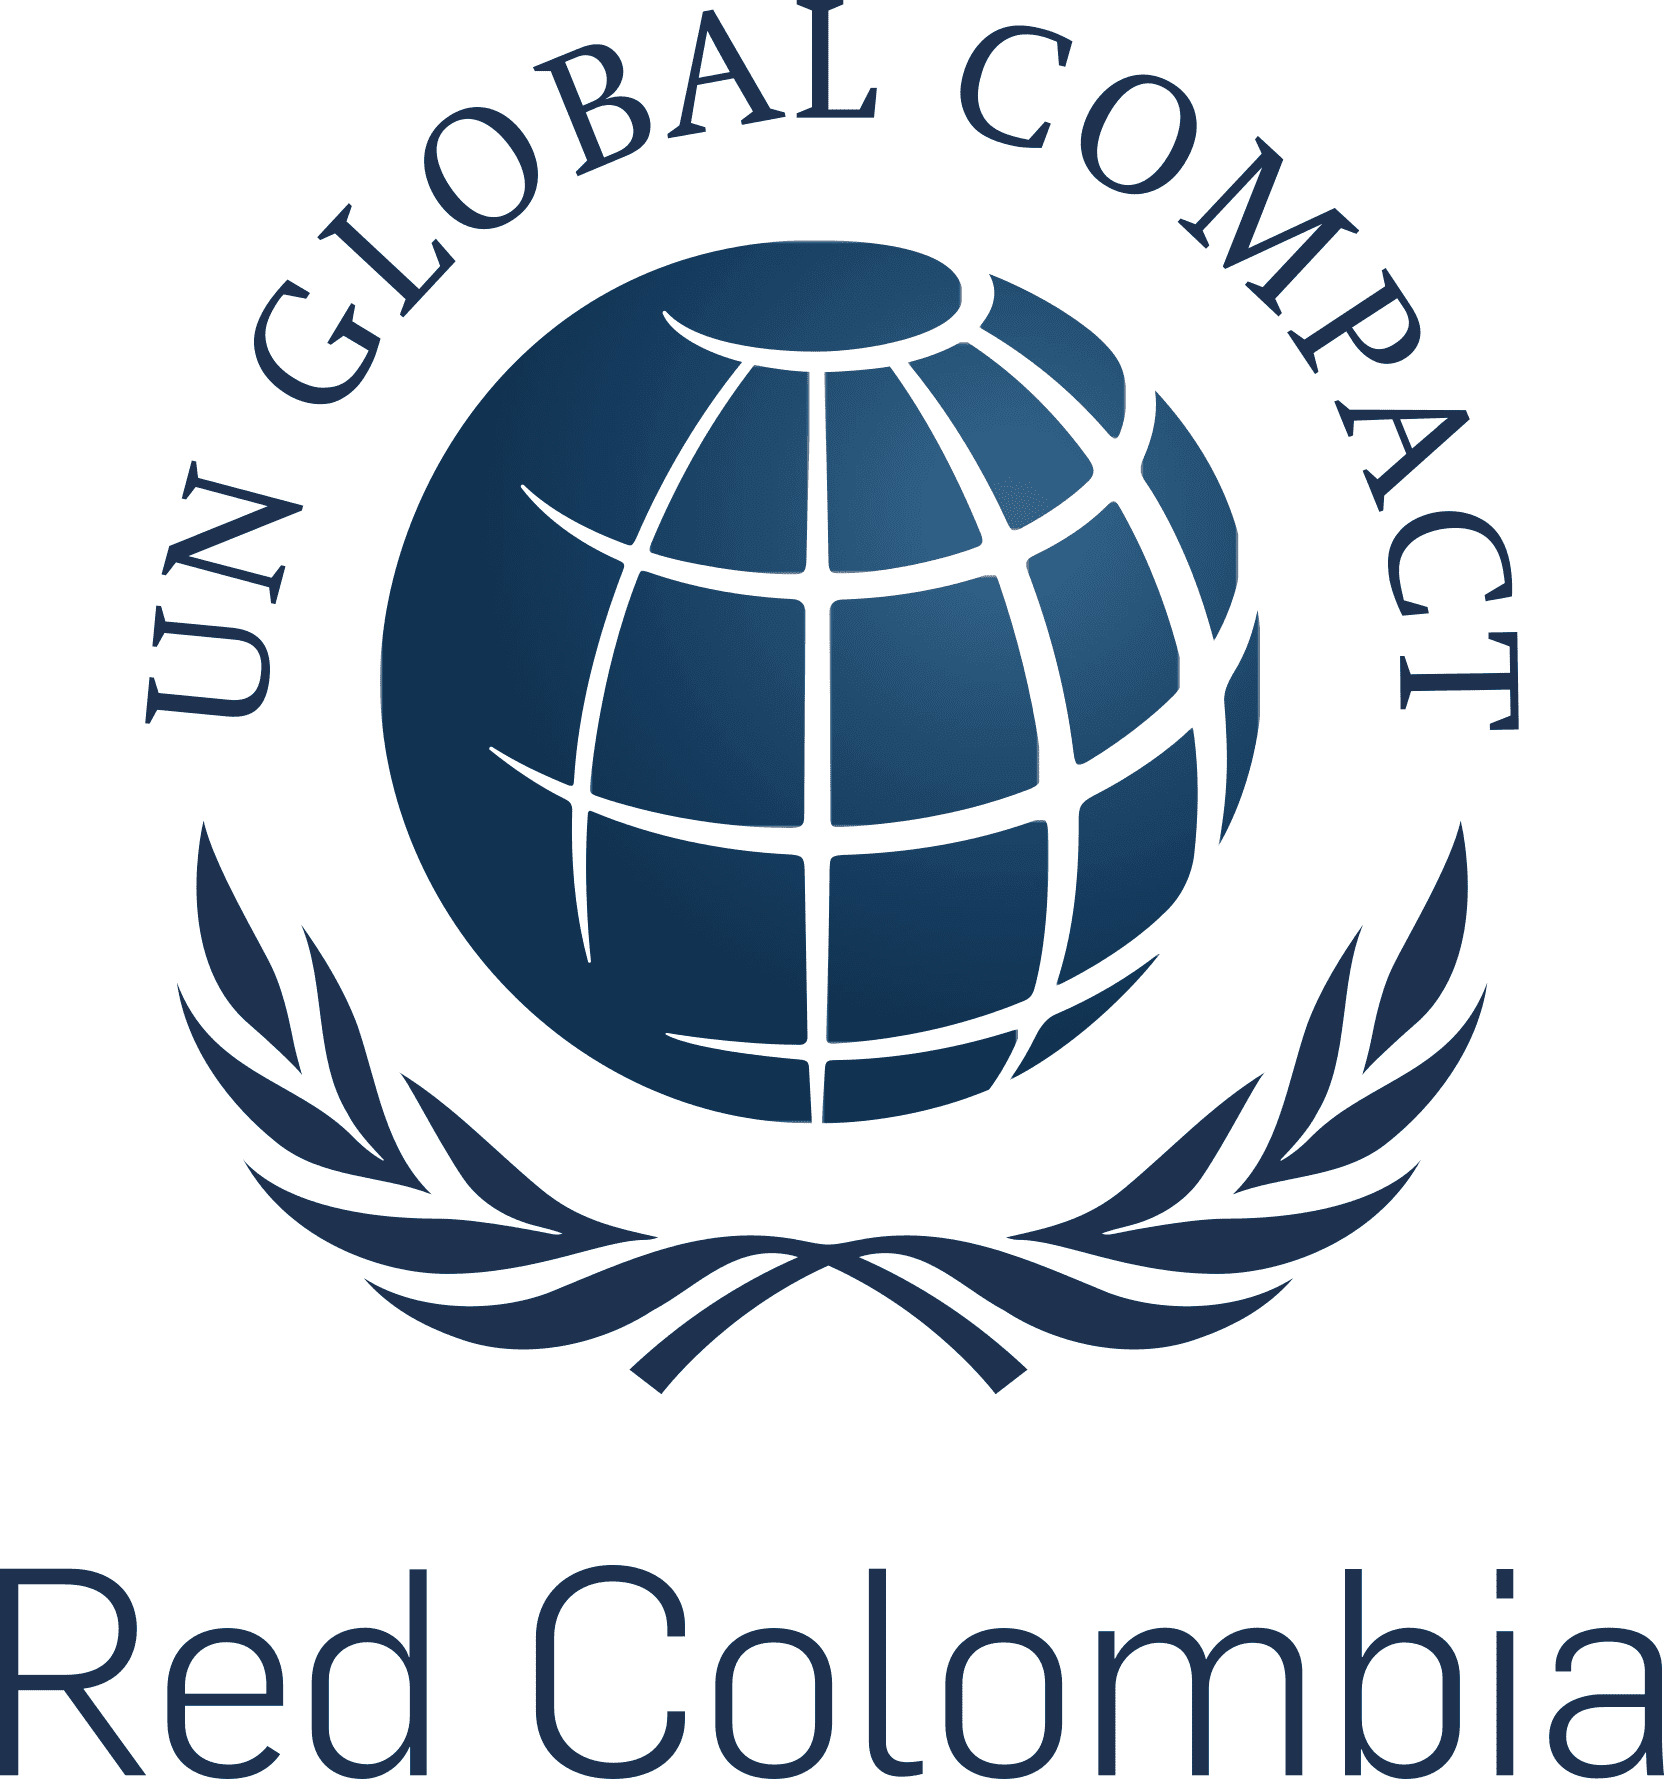 Pacto Global Colombia - Aliado internacional